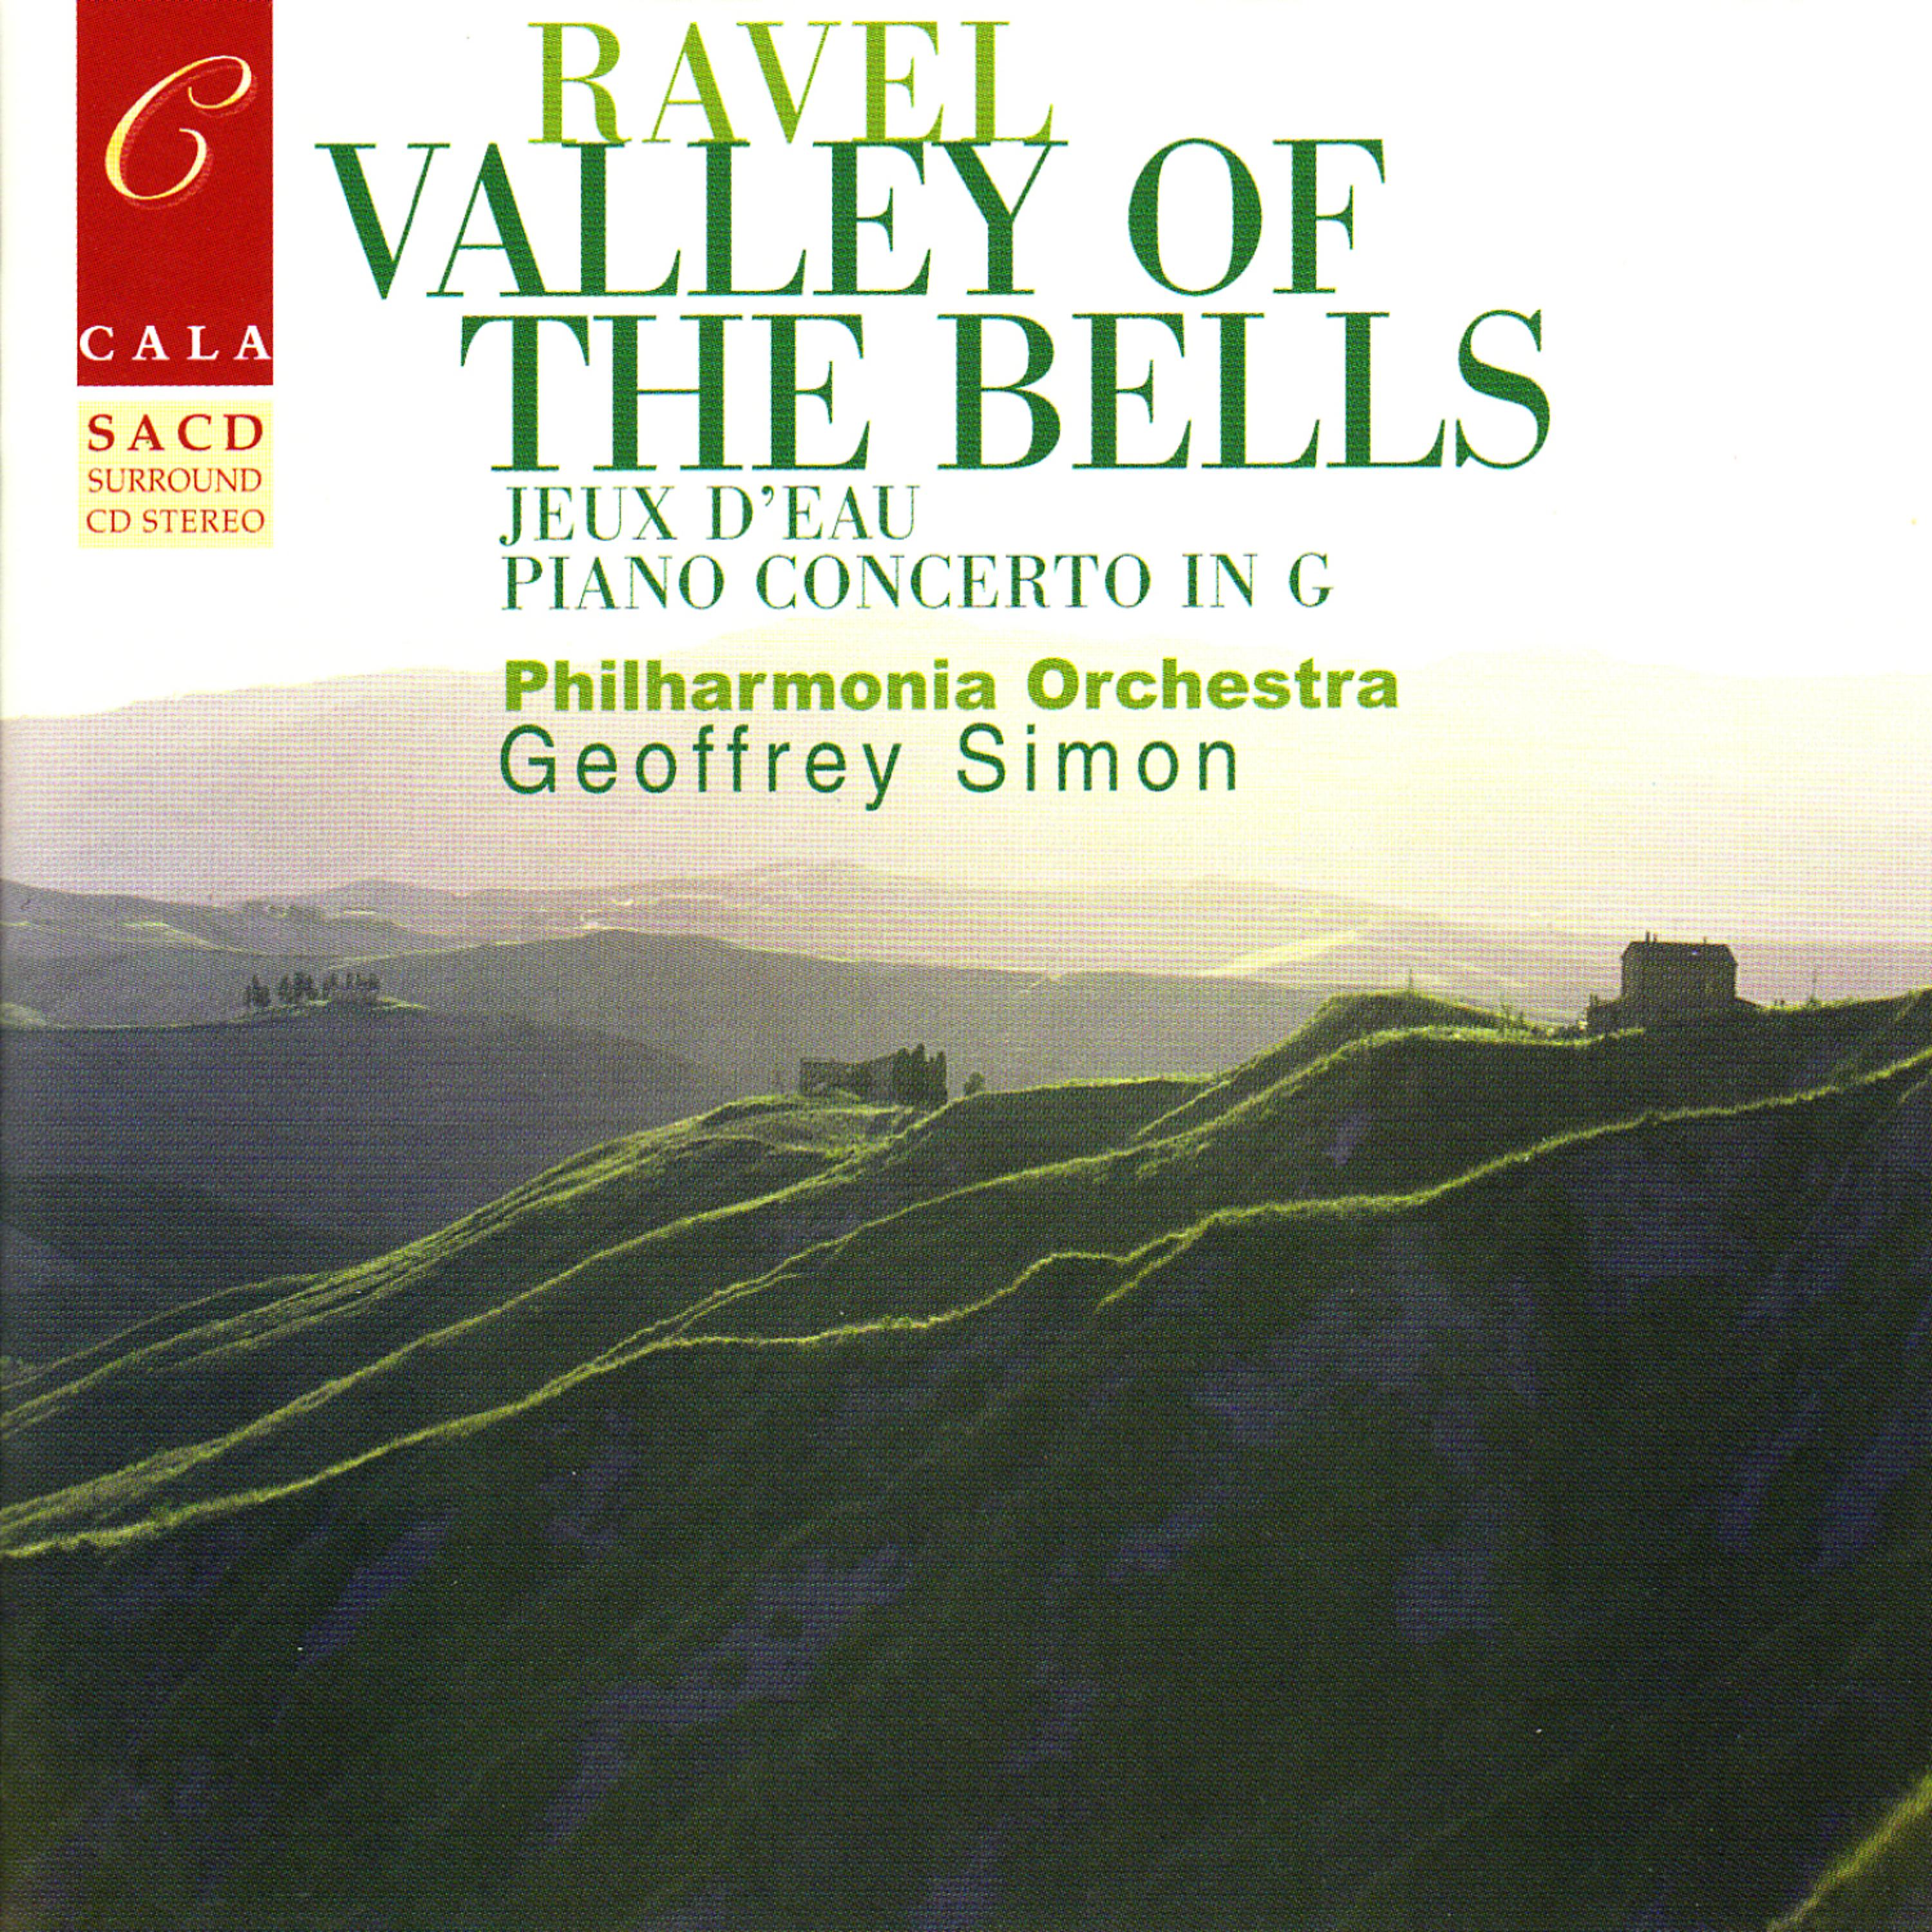 Постер альбома Ravel: Valley of the Bells, Jeux d'eau, Rapsodie espagnole, Le gibet, et al.